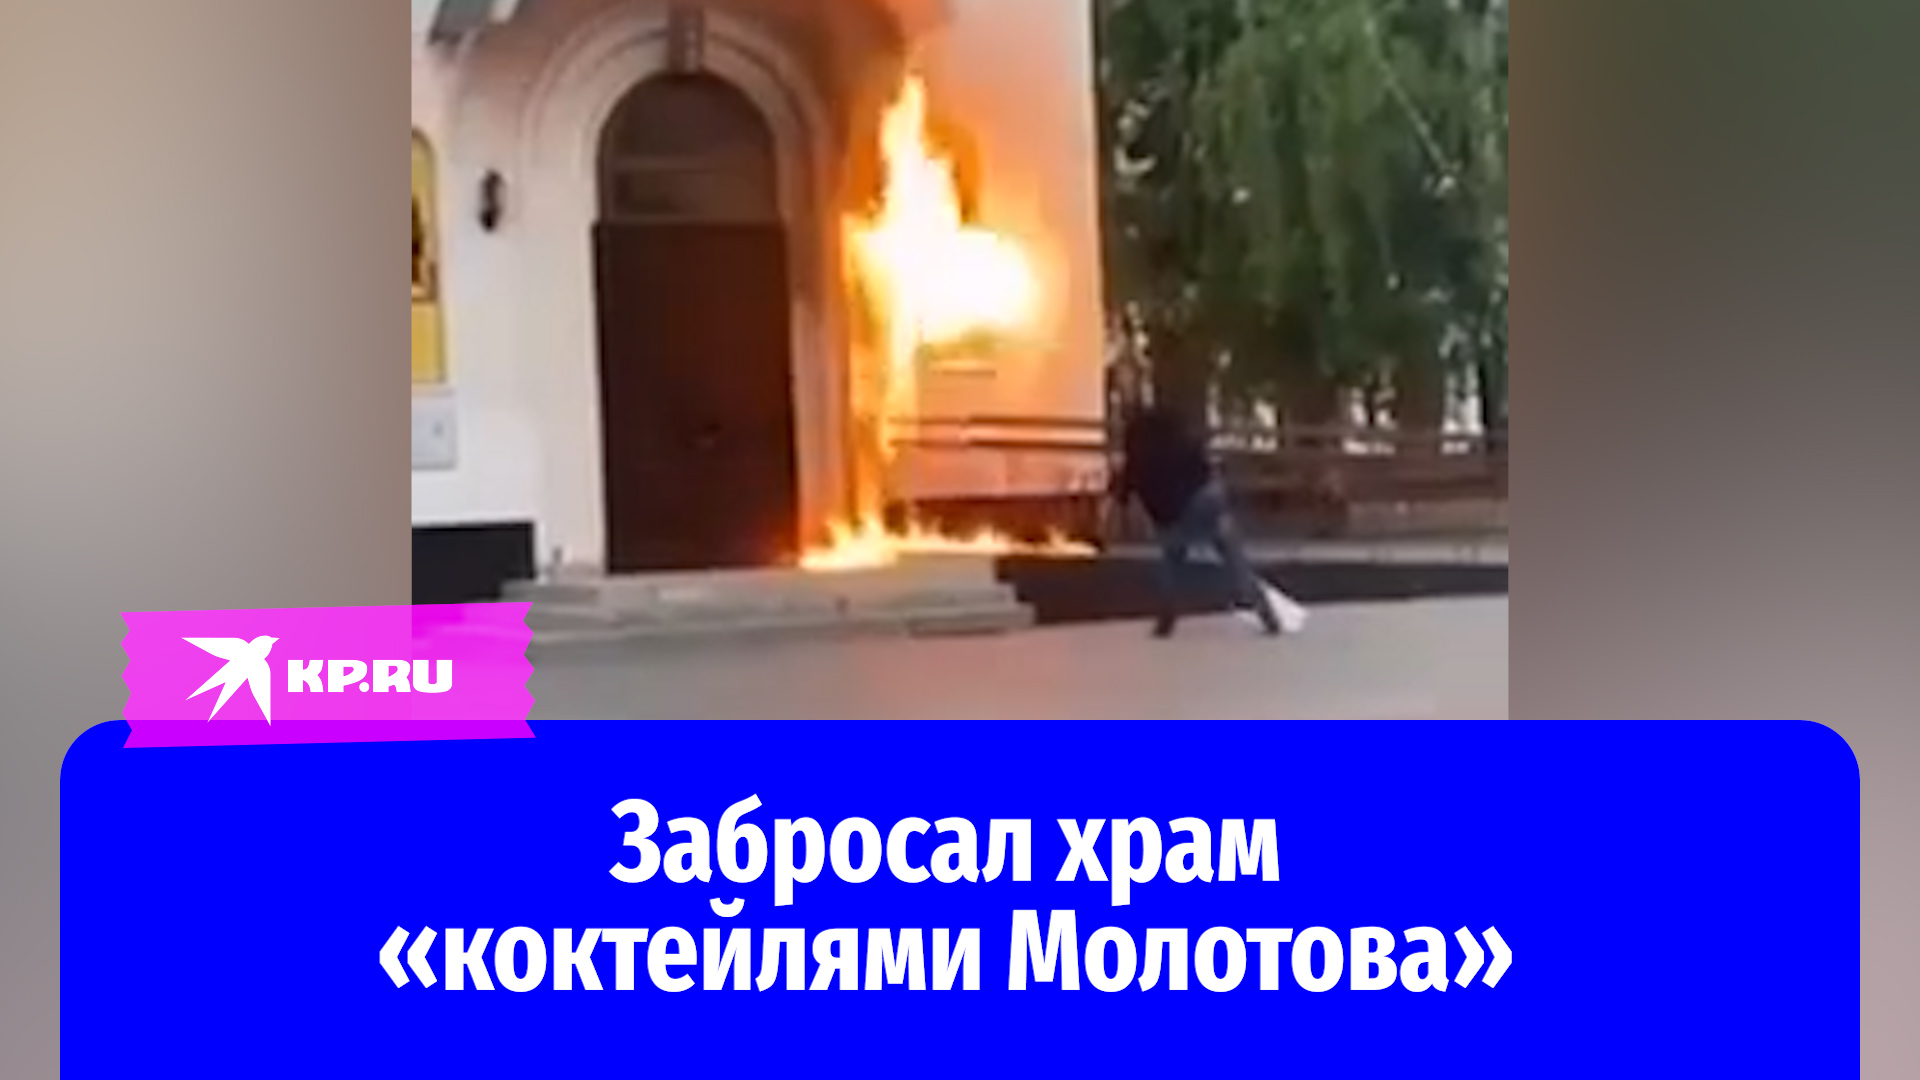 Мужчина попытался поджечь храм Дмитрия Донского в Тюмени